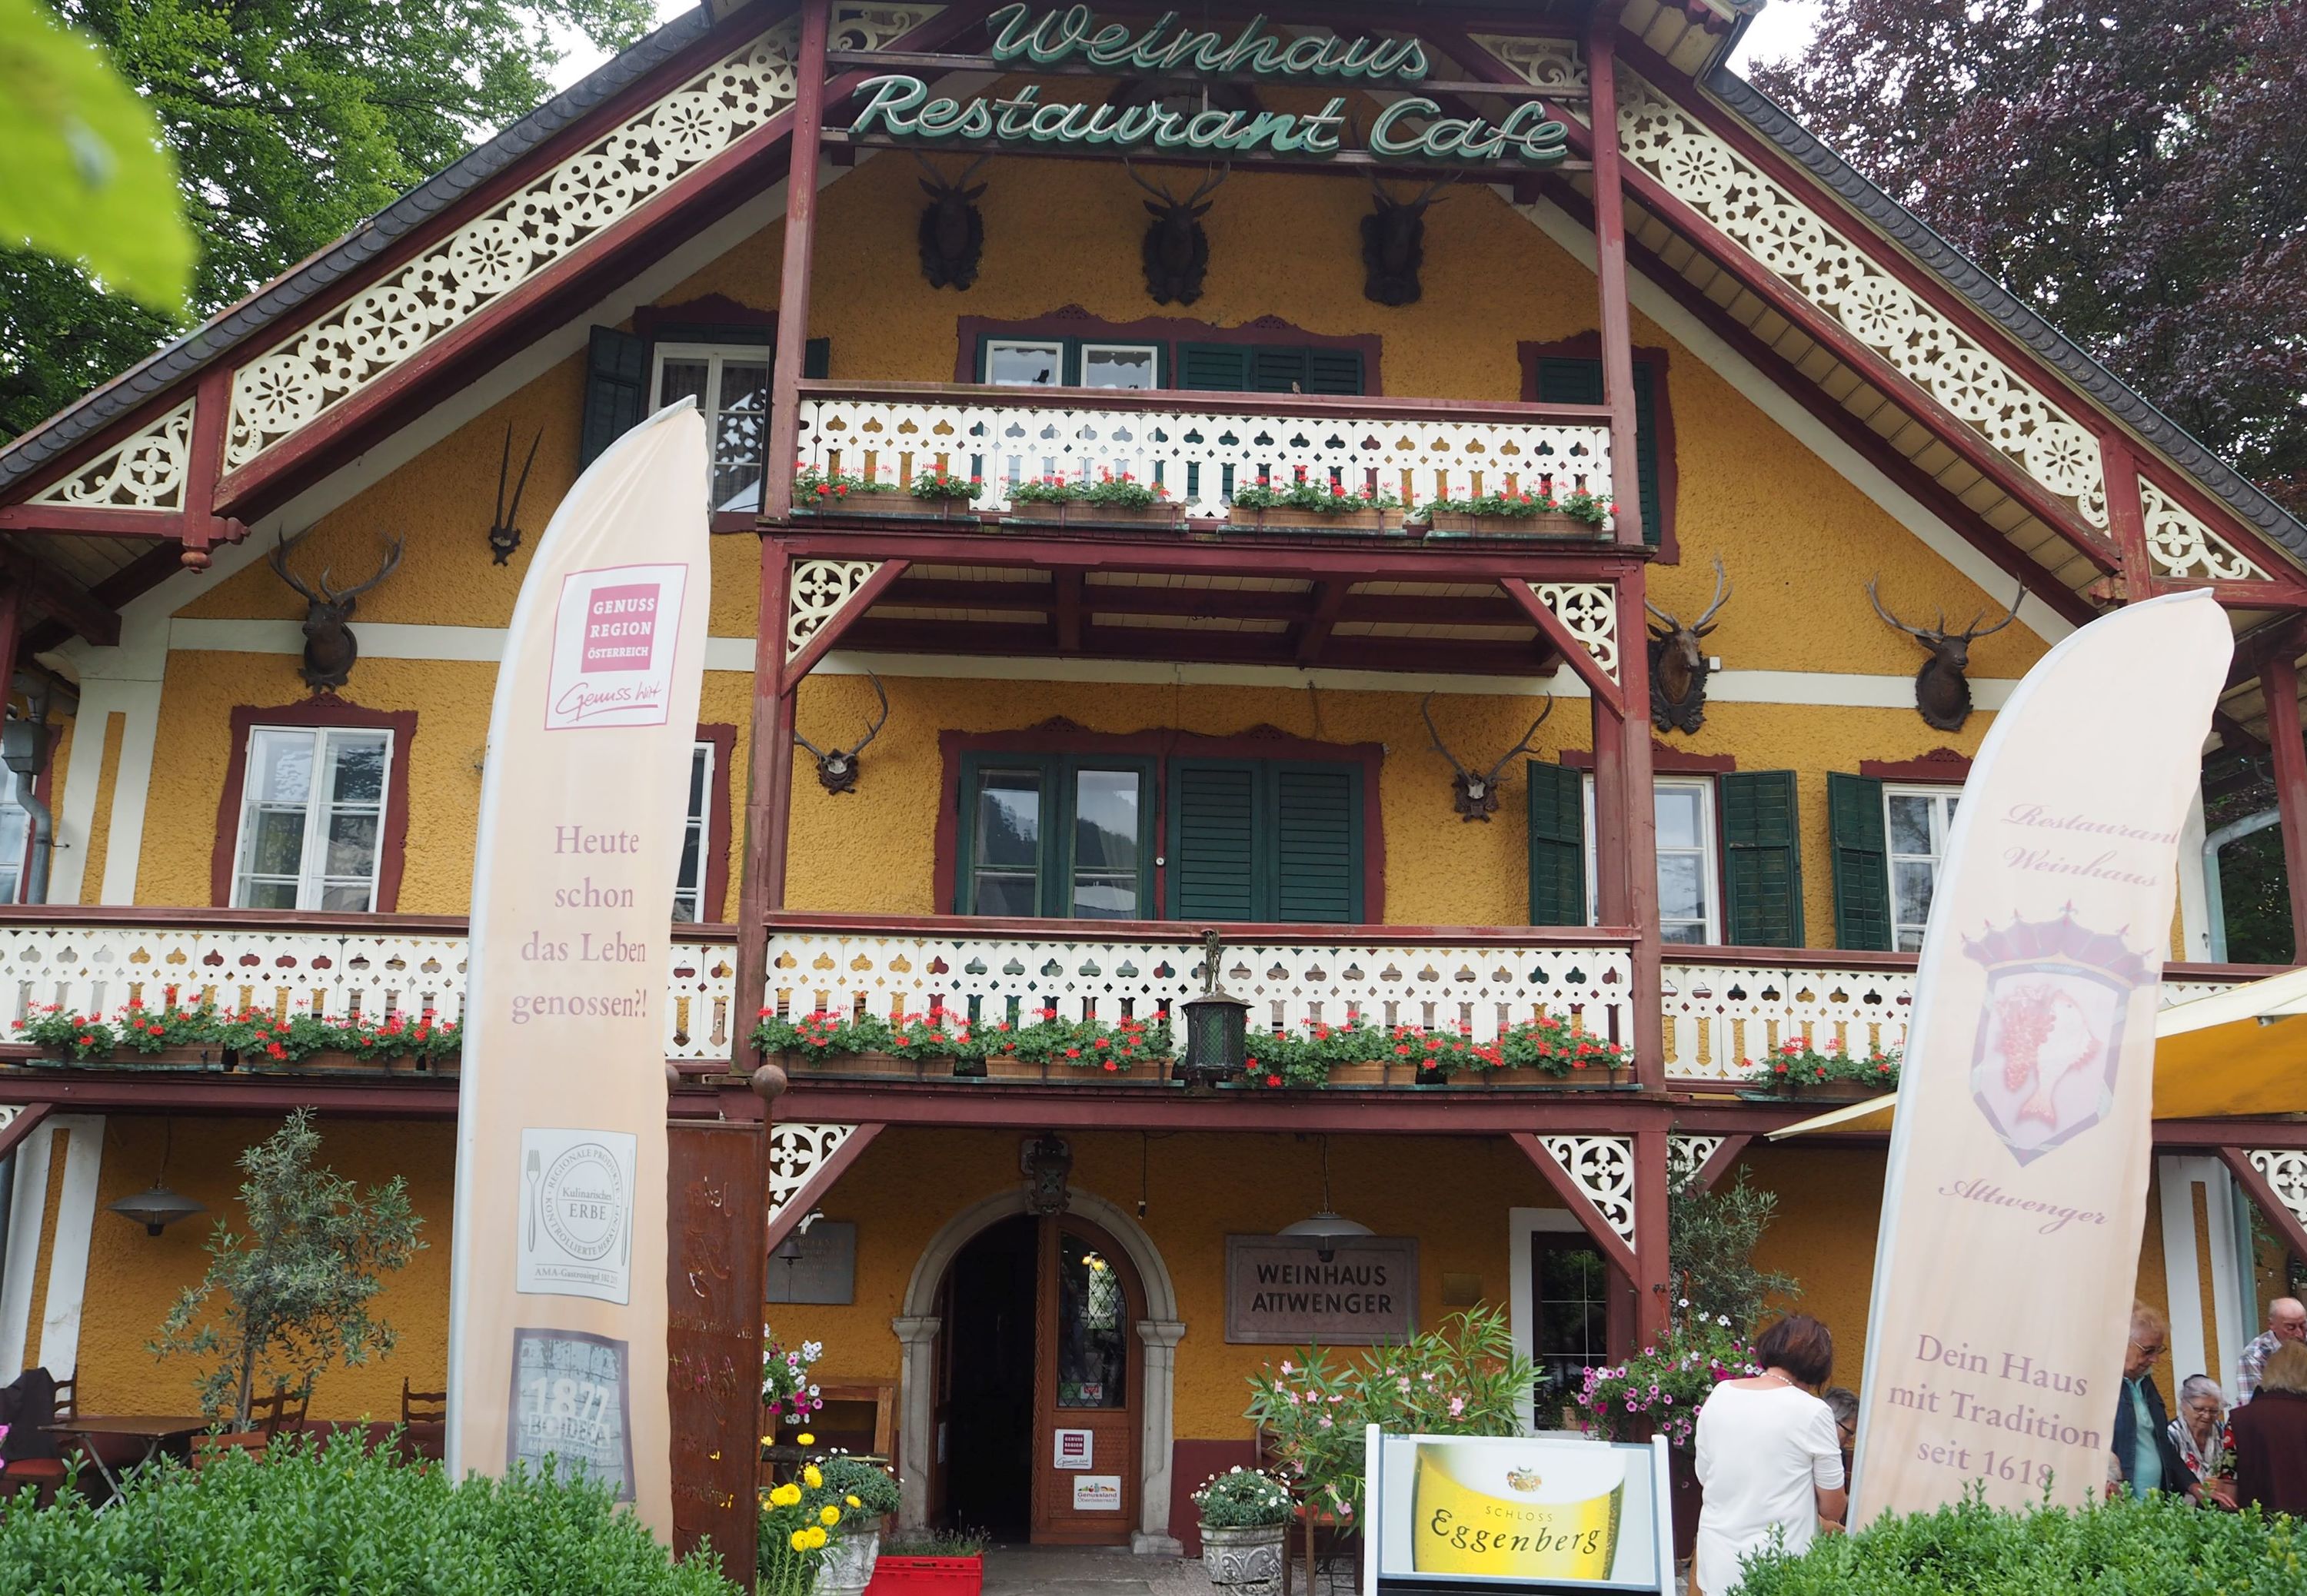 Weinhaus Atteneder